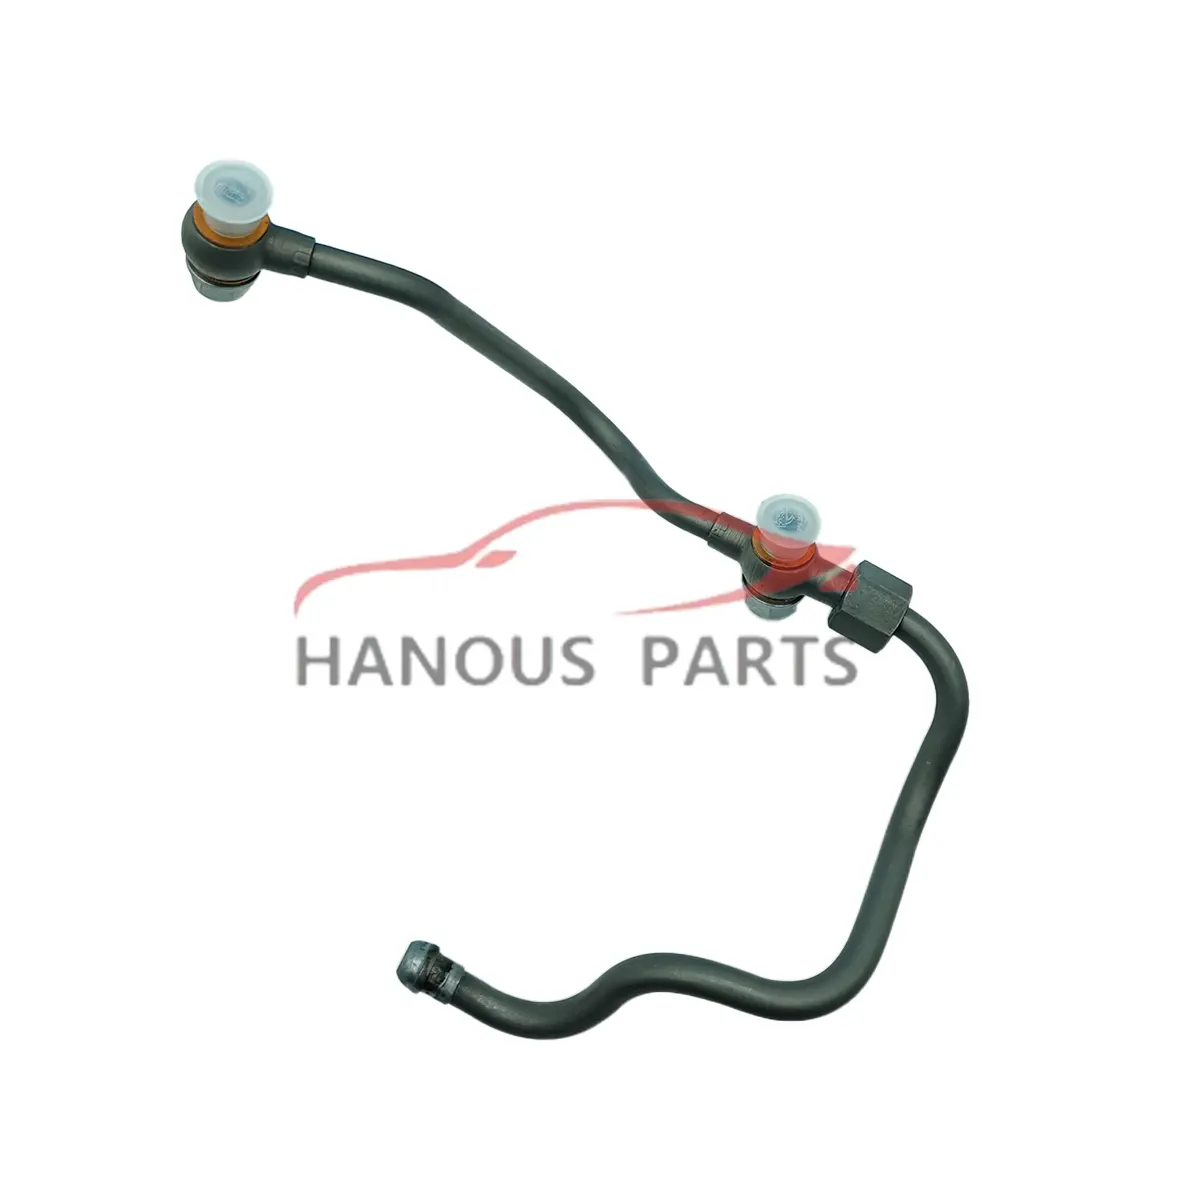 Tuyau d'huile de chargeur Turbo Hanous pour Mercedes Benz Sprinter OEM 6511800920 6511801820 6511800320